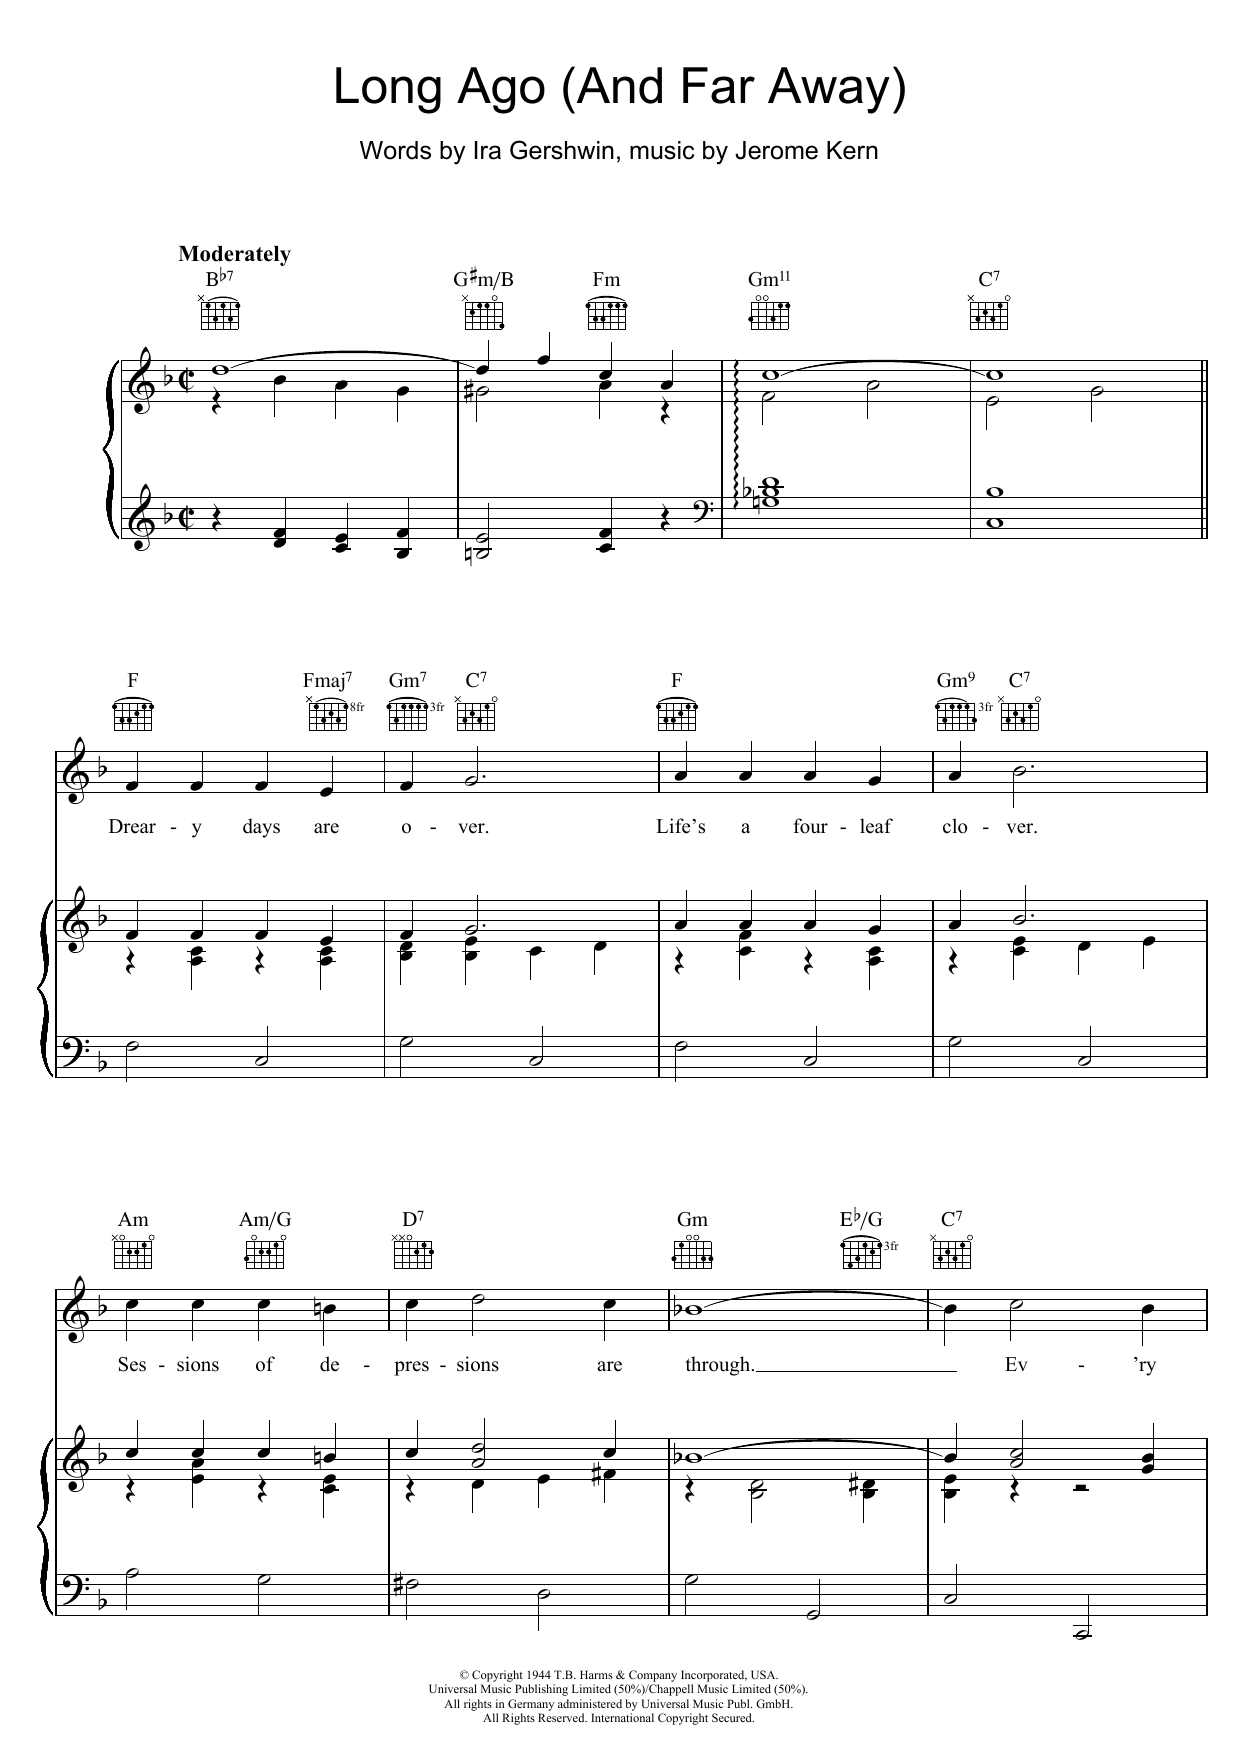 Ira Gershwin Long Ago (And Far Away) Sheet Music Notes & Chords for Ukulele Chords/Lyrics - Download or Print PDF